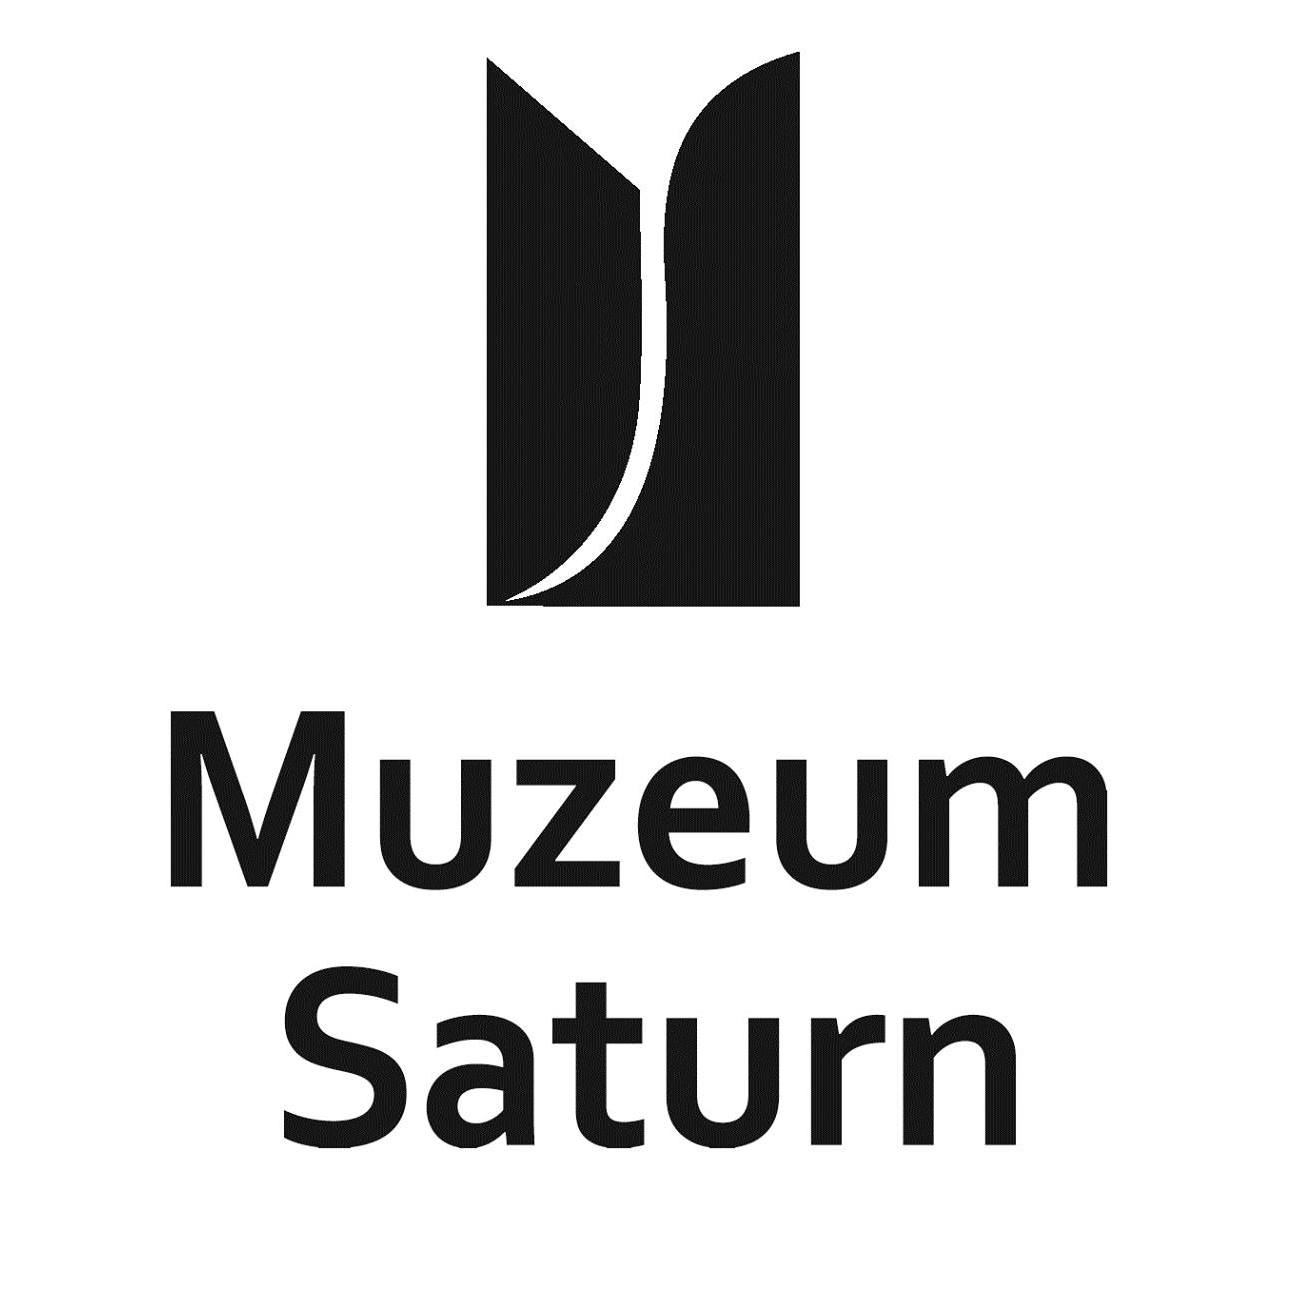 Muzeum Saturn